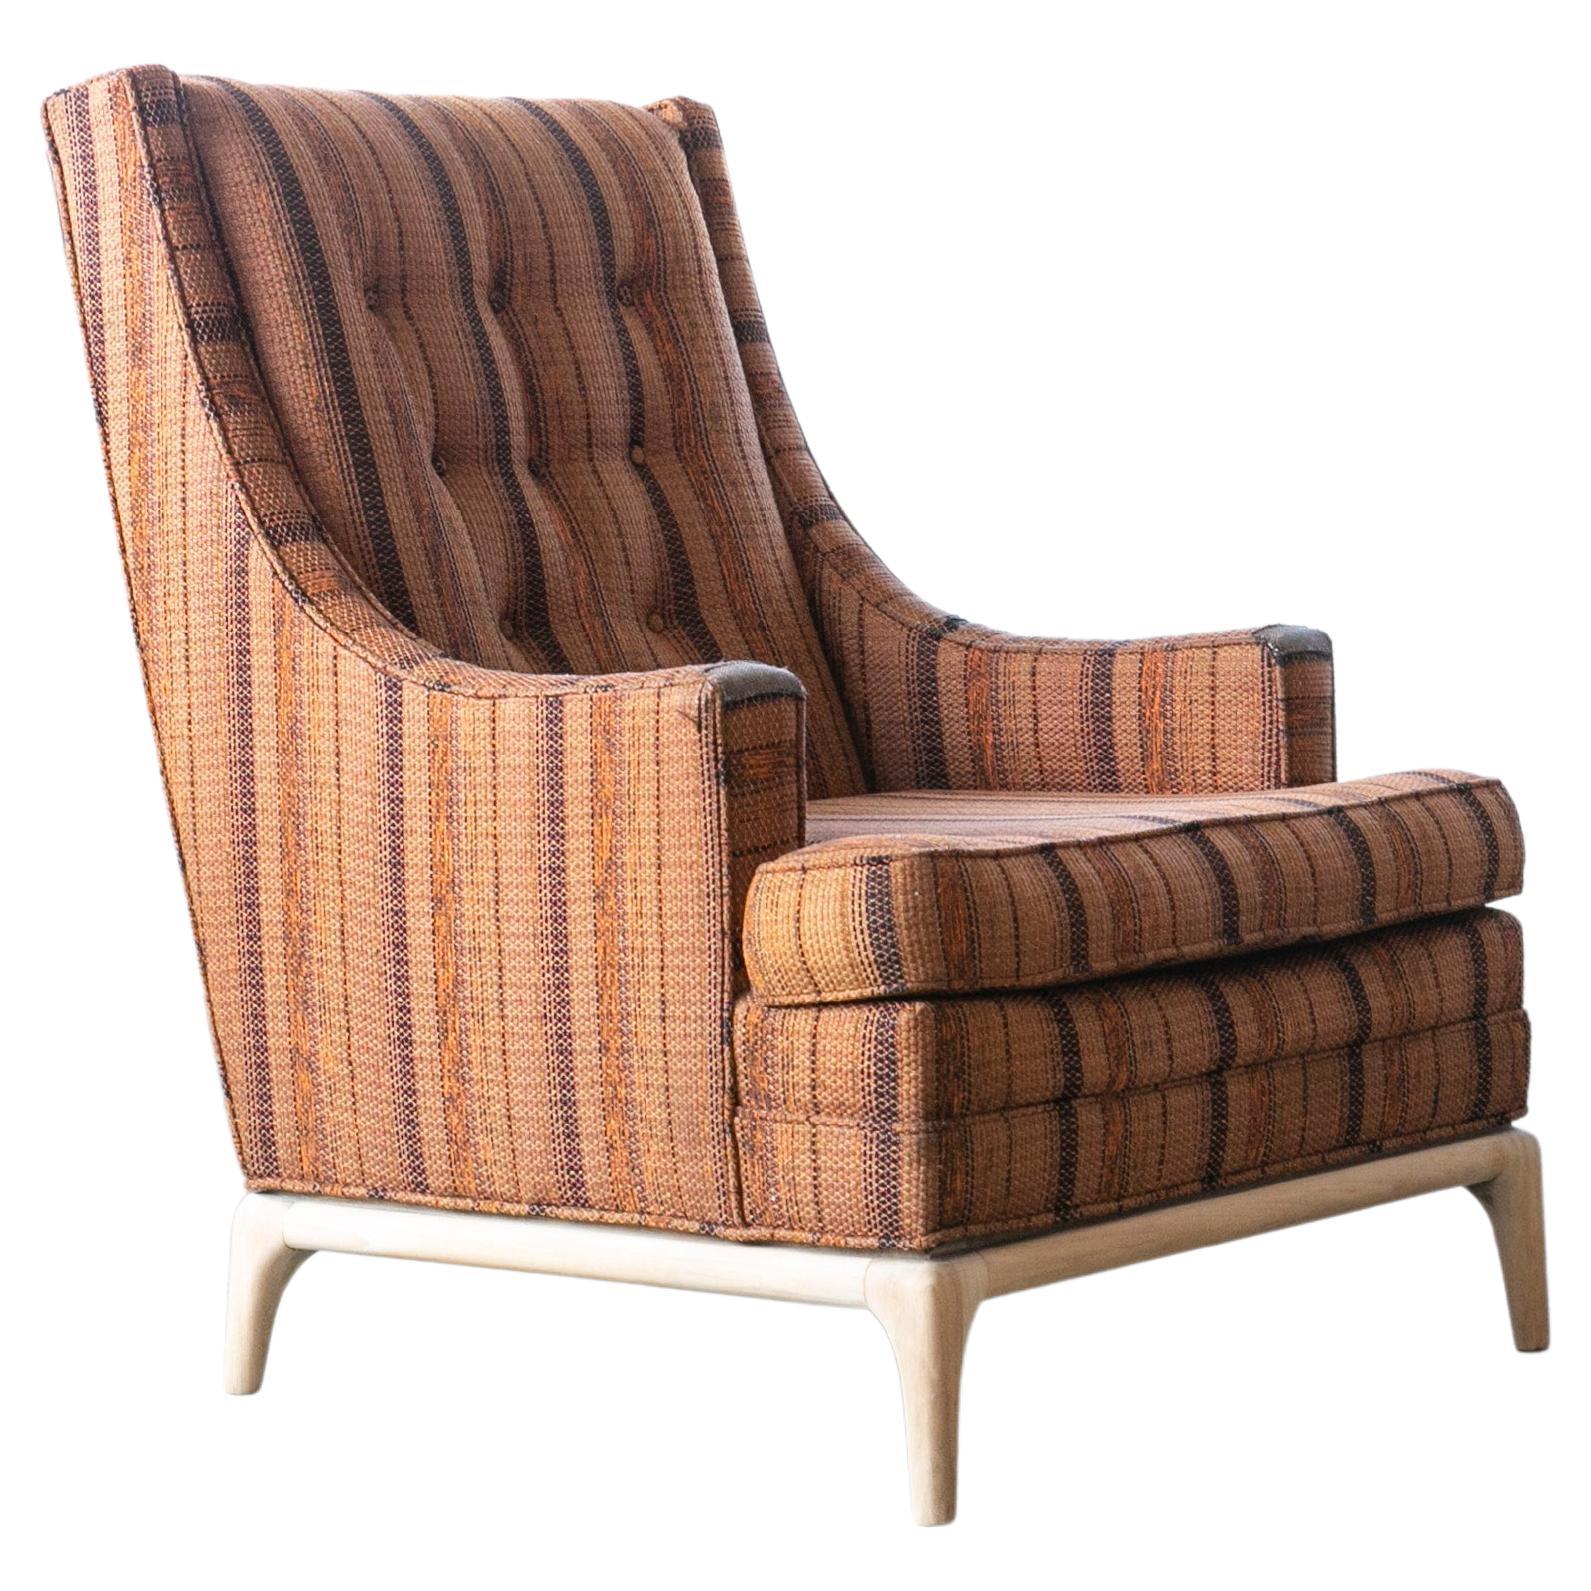 T. H. Robsjohn-Gibbings Style Lounge Chair 1950er Jahre